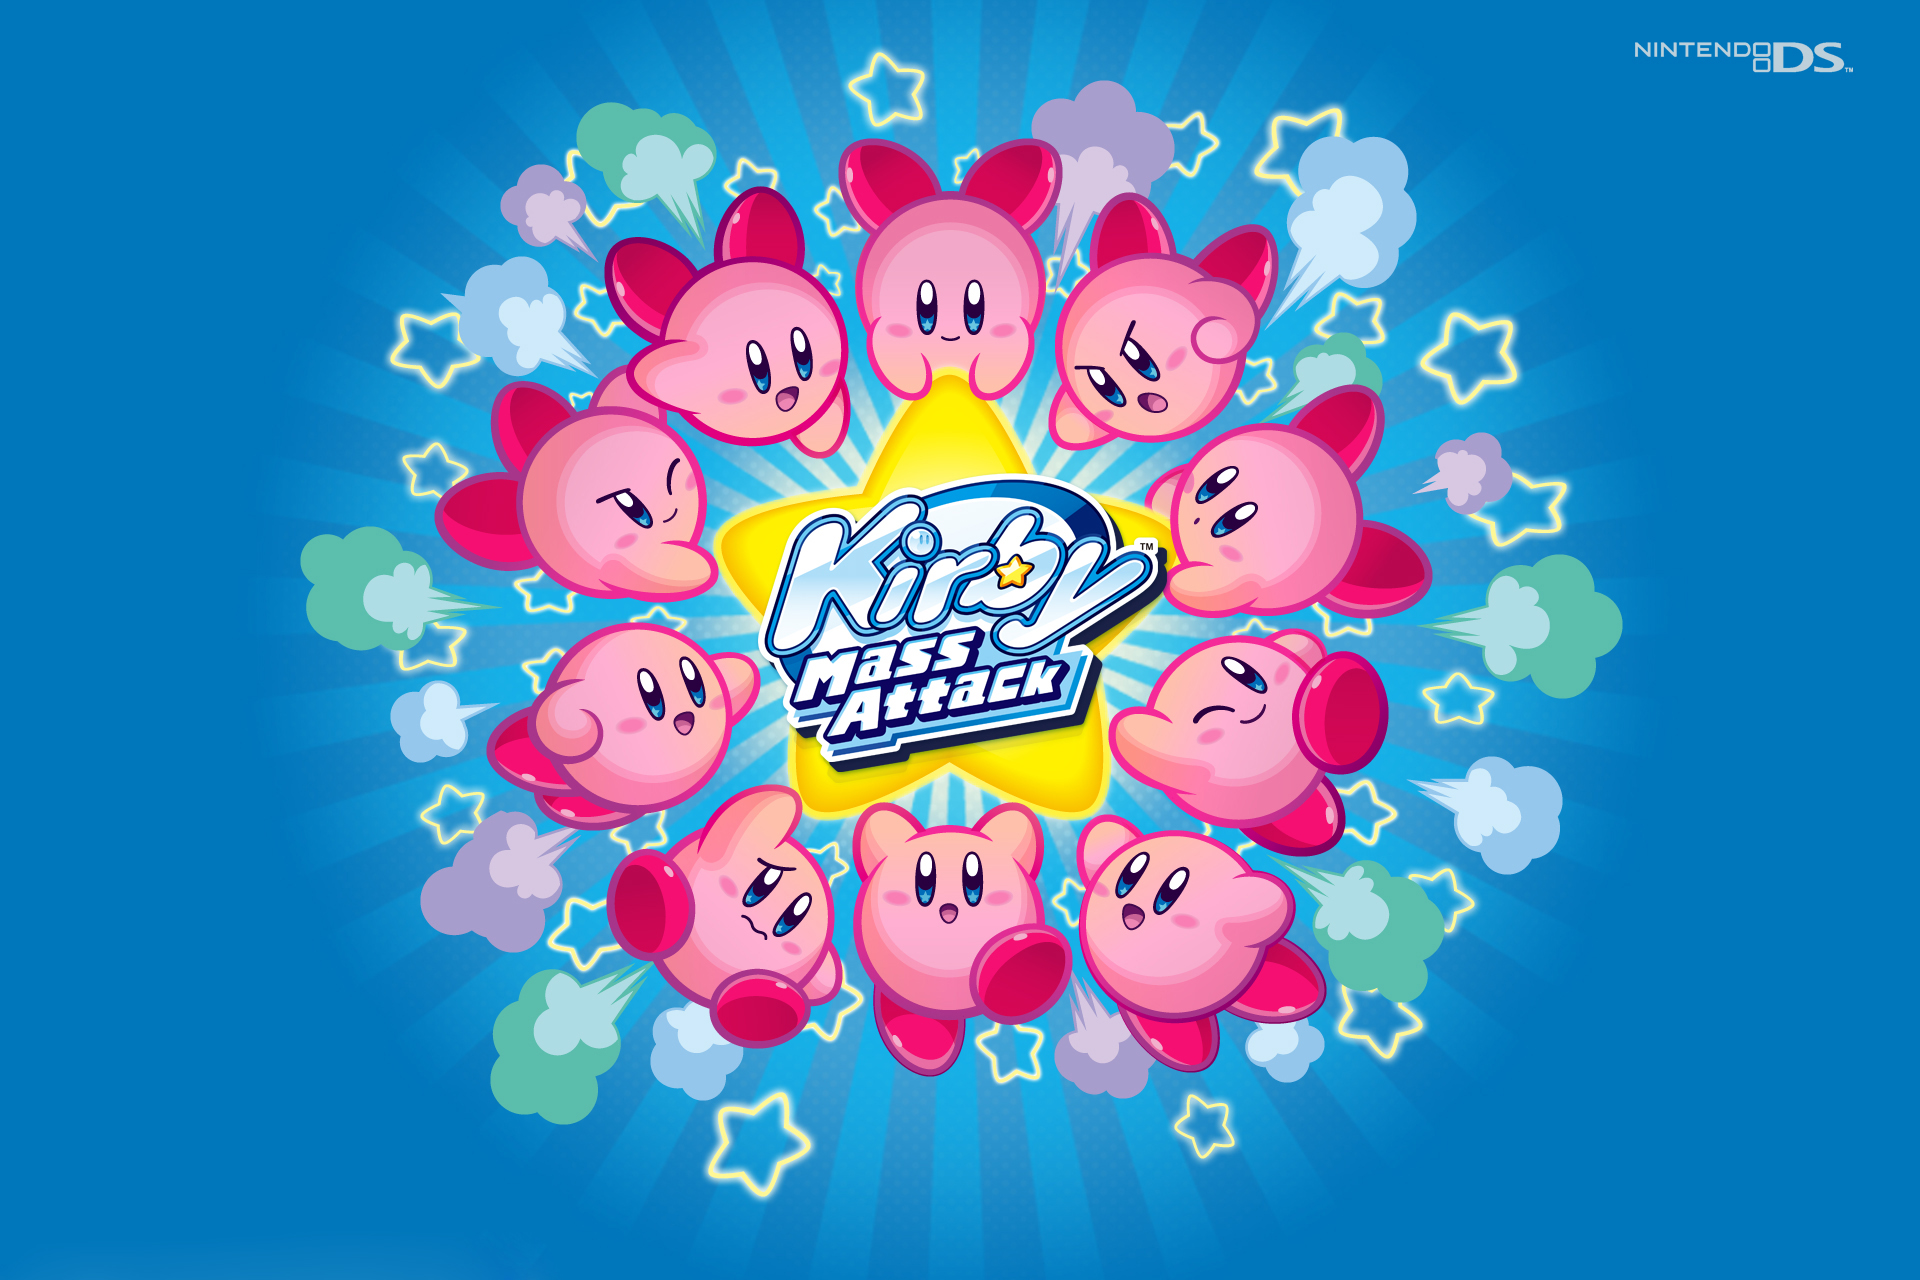 Bạn đang tìm kiếm hình nền độc đáo cho thiết bị của mình? Hình nền Kirby miễn phí sẽ là lựa chọn hoàn hảo cho bạn! Với những hình ảnh đáng yêu và tươi sáng, bạn sẽ không thể rời khỏi màn hình thiết bị.